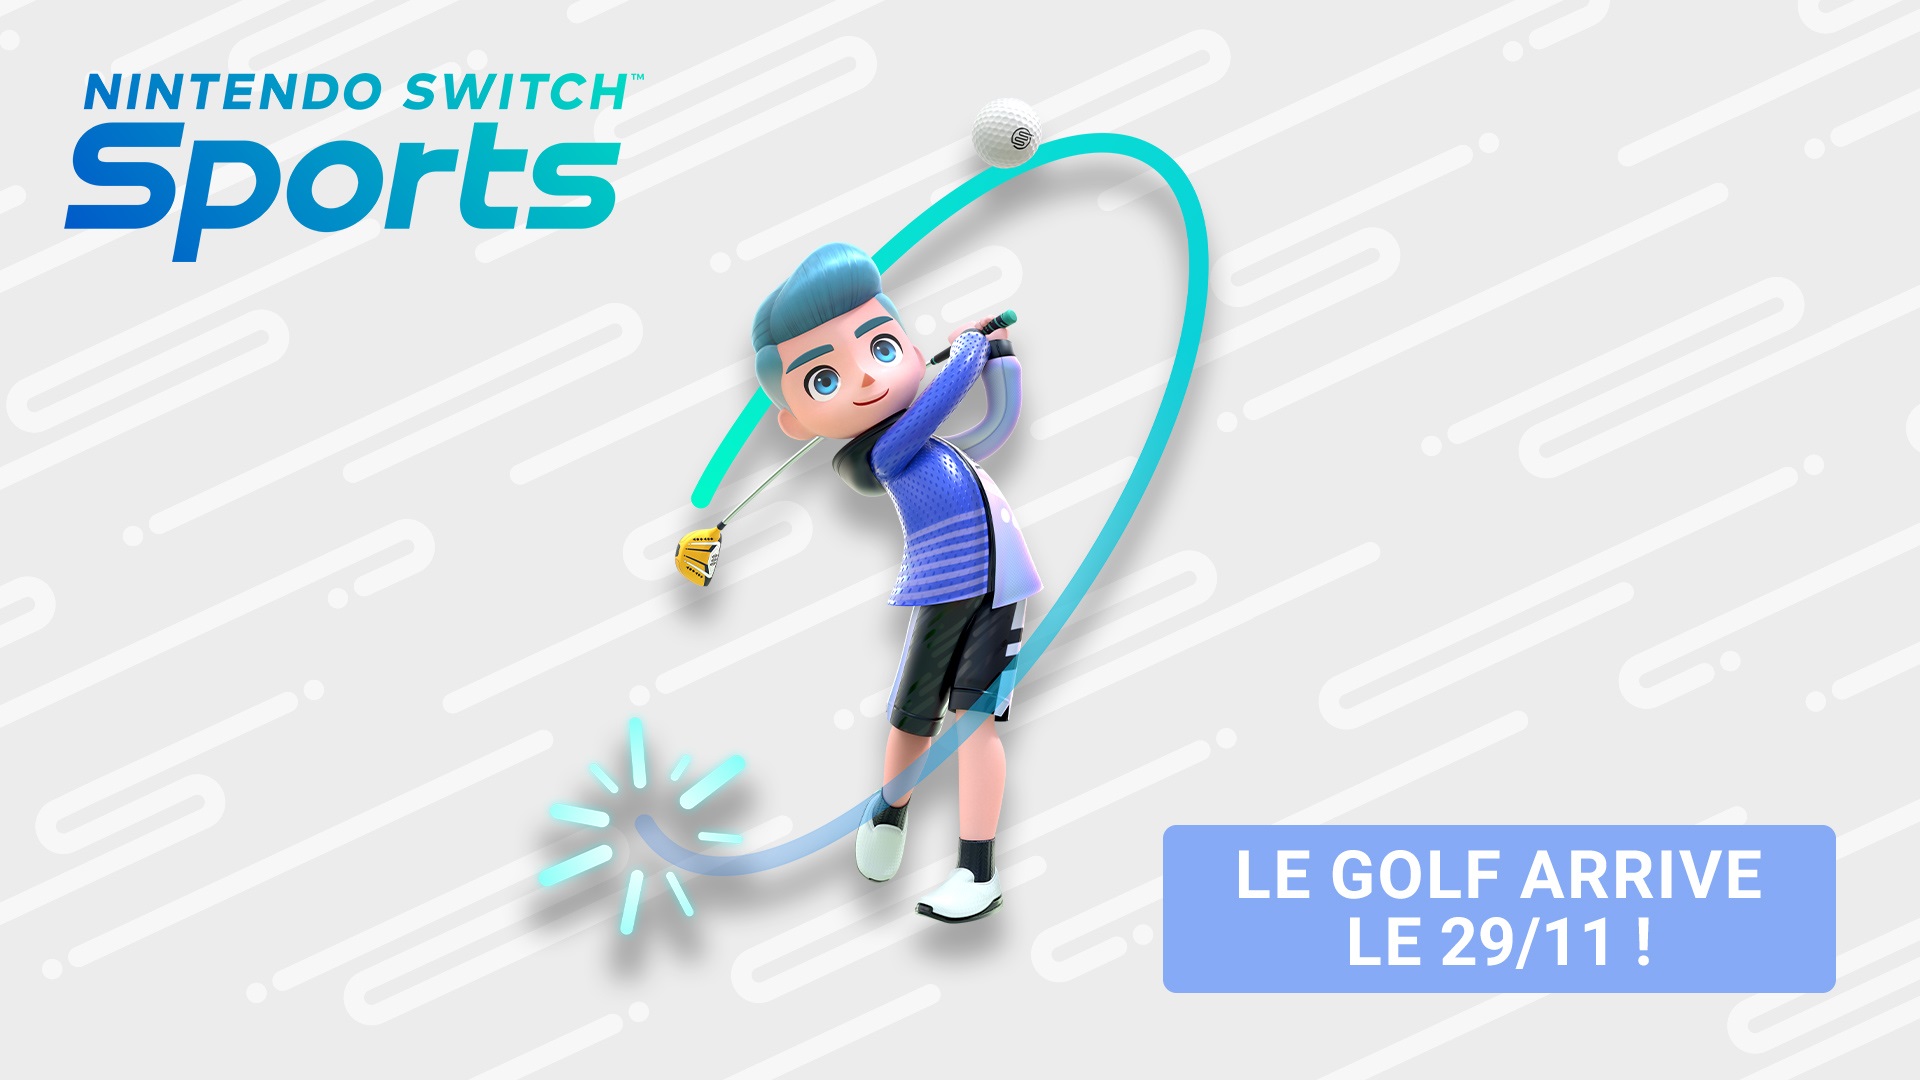 Le golf est disponible dans Nintendo Switch Sports qui passe en v1